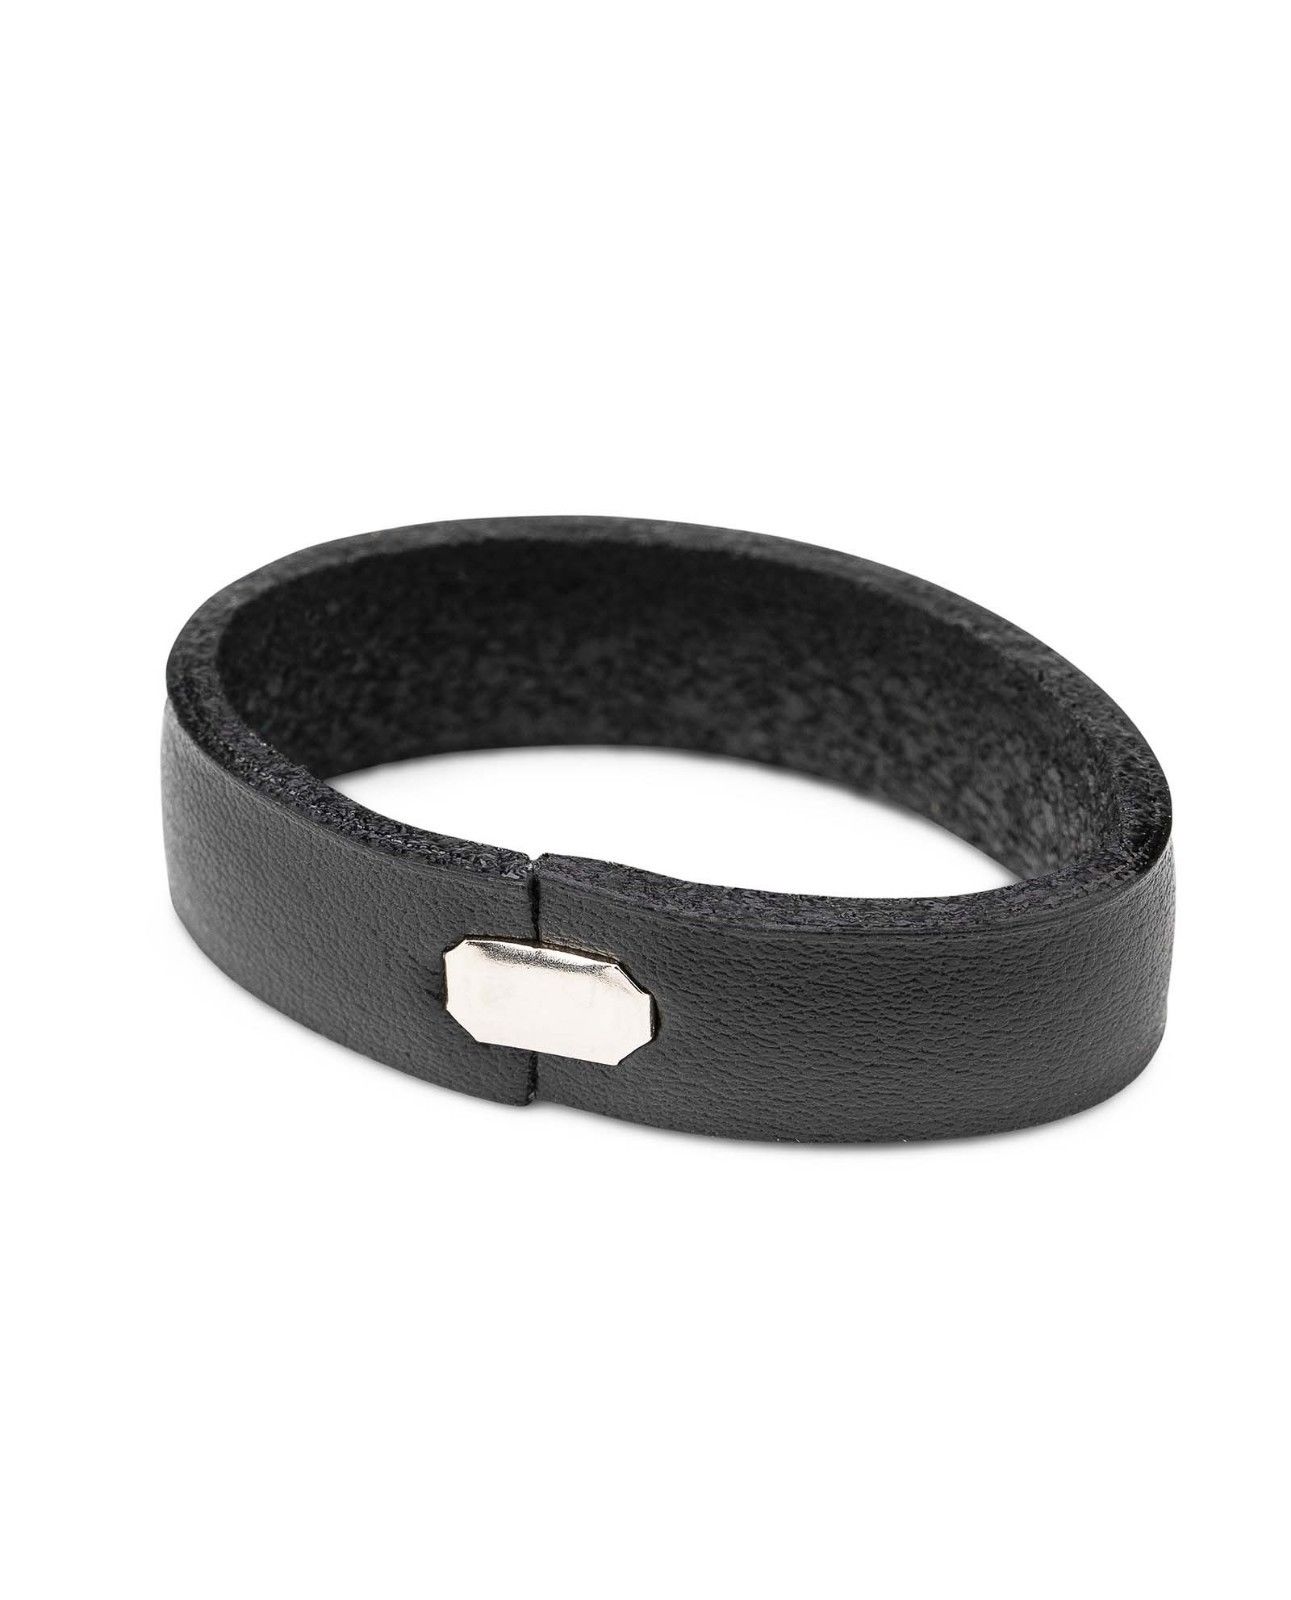 Buy Black Leather Belt Loops